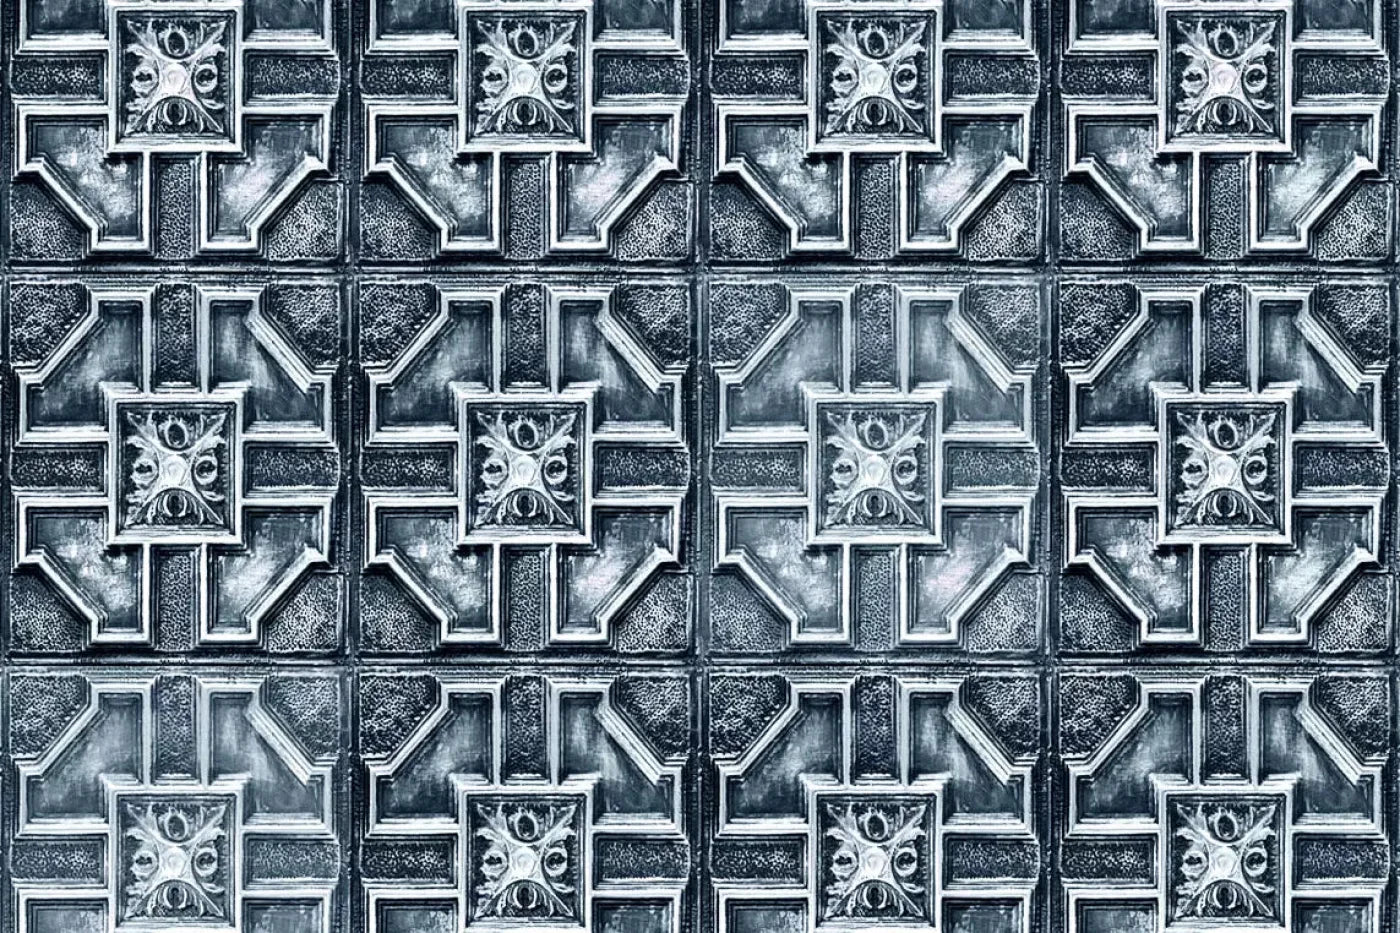 Jasper 5X4 Rubbermat Floor ( 60 X 48 Inch ) Backdrop